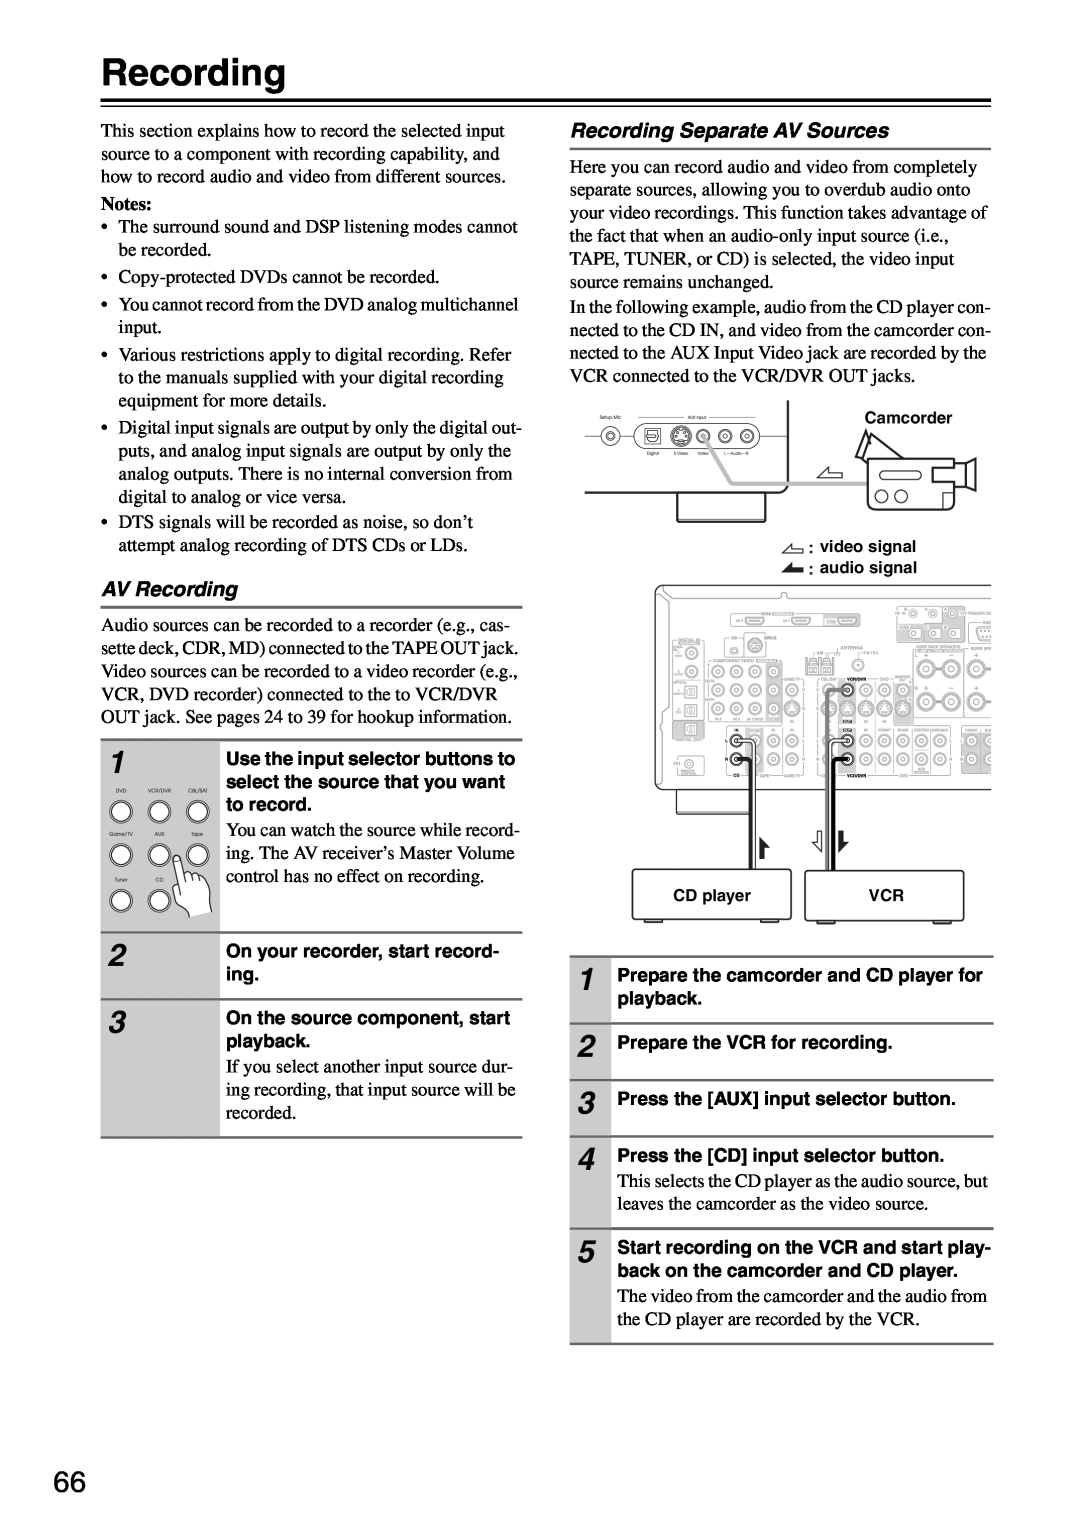 Integra DTR-5.8 instruction manual AV Recording, Recording Separate AV Sources, Notes 